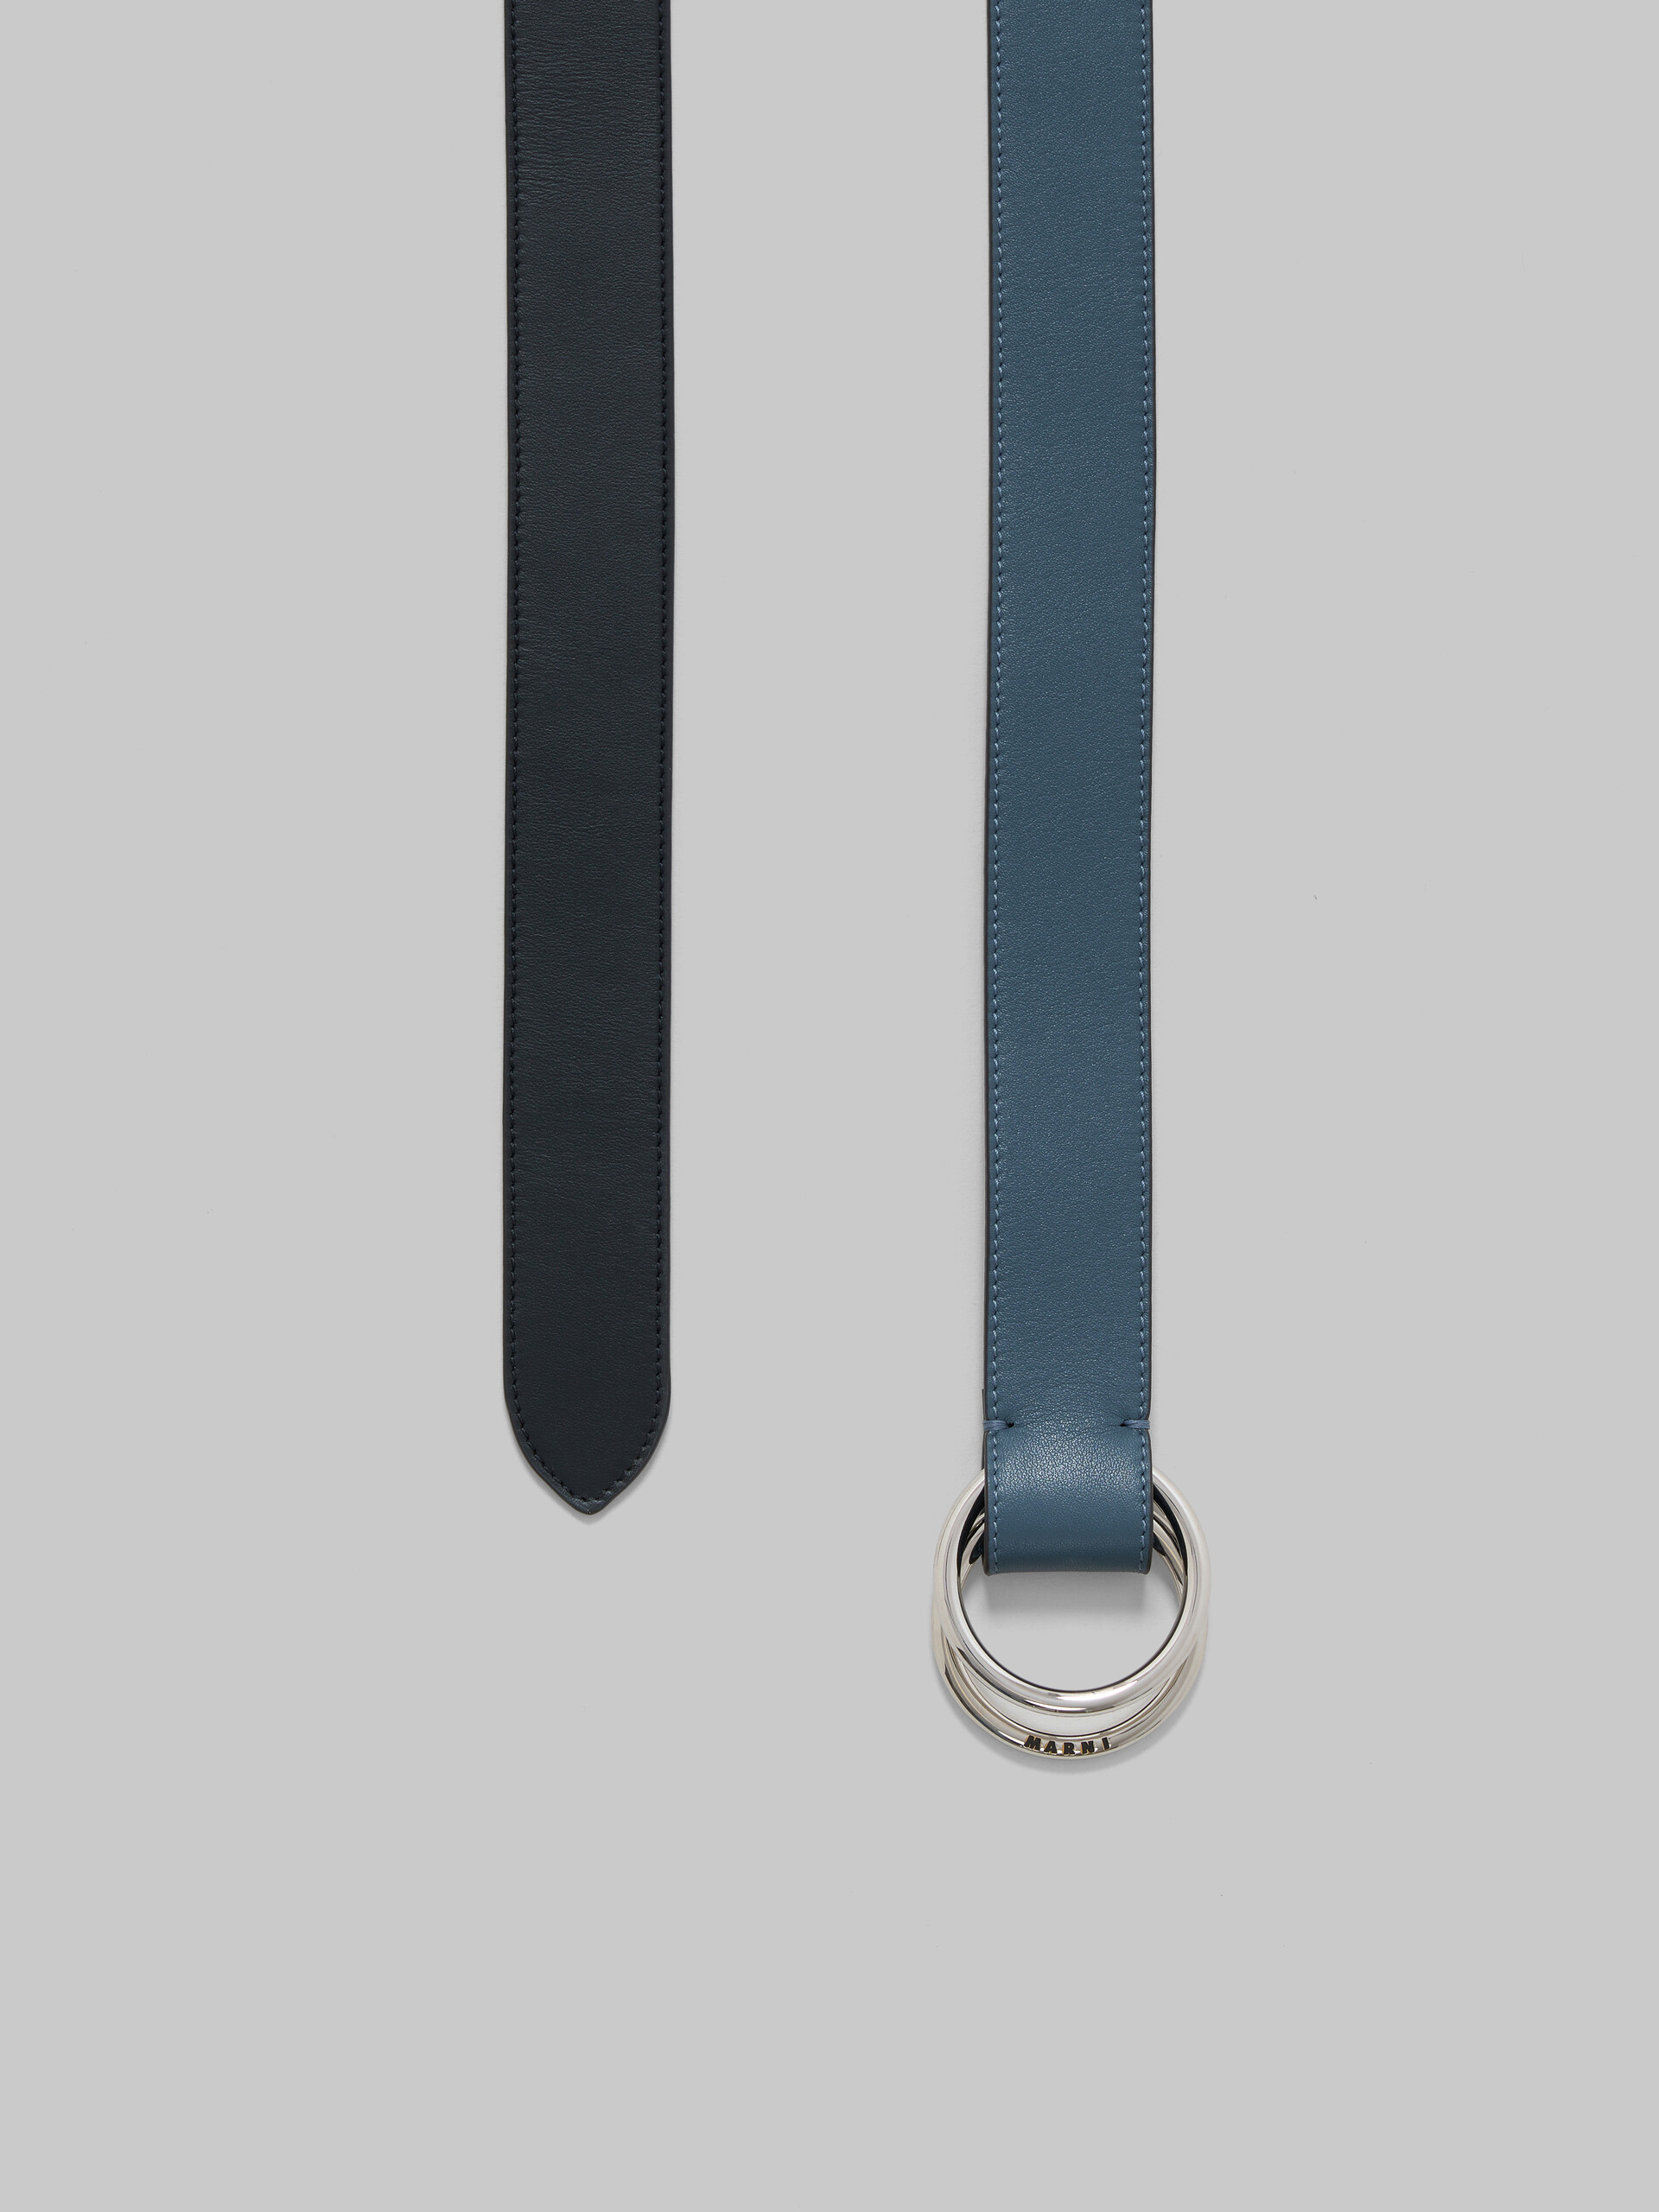 Ledergürtel mit Ringschnalle in Schwarz und Blau - Gürtel - Image 3